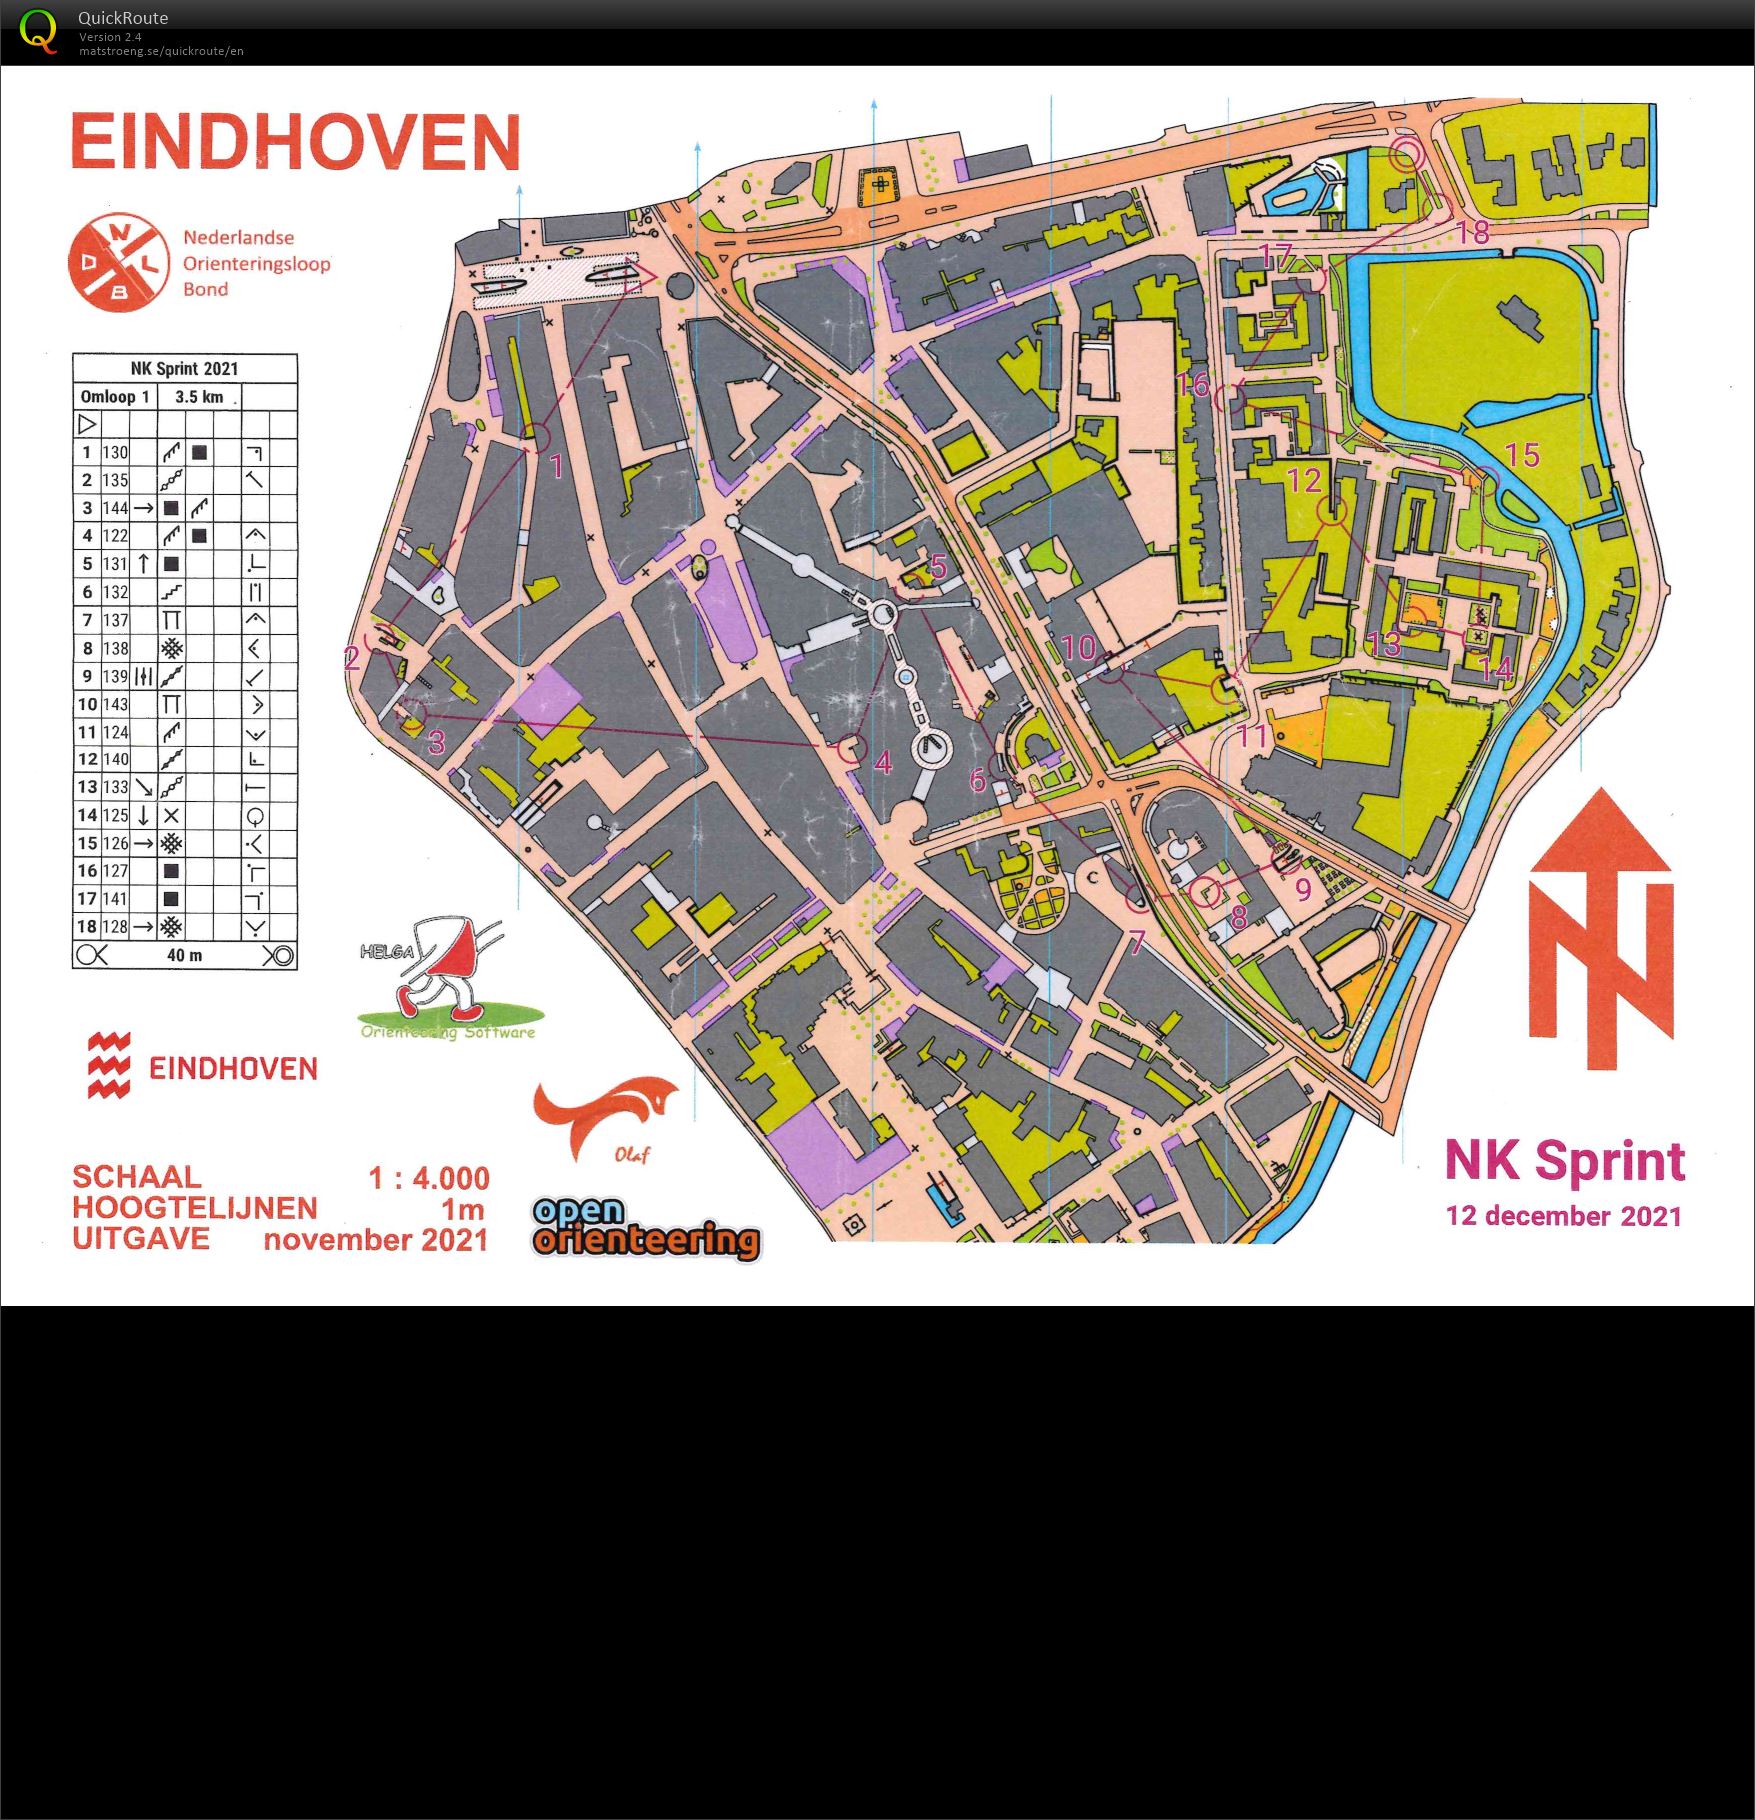 NK Sprint Eindhoven (12.12.2021)